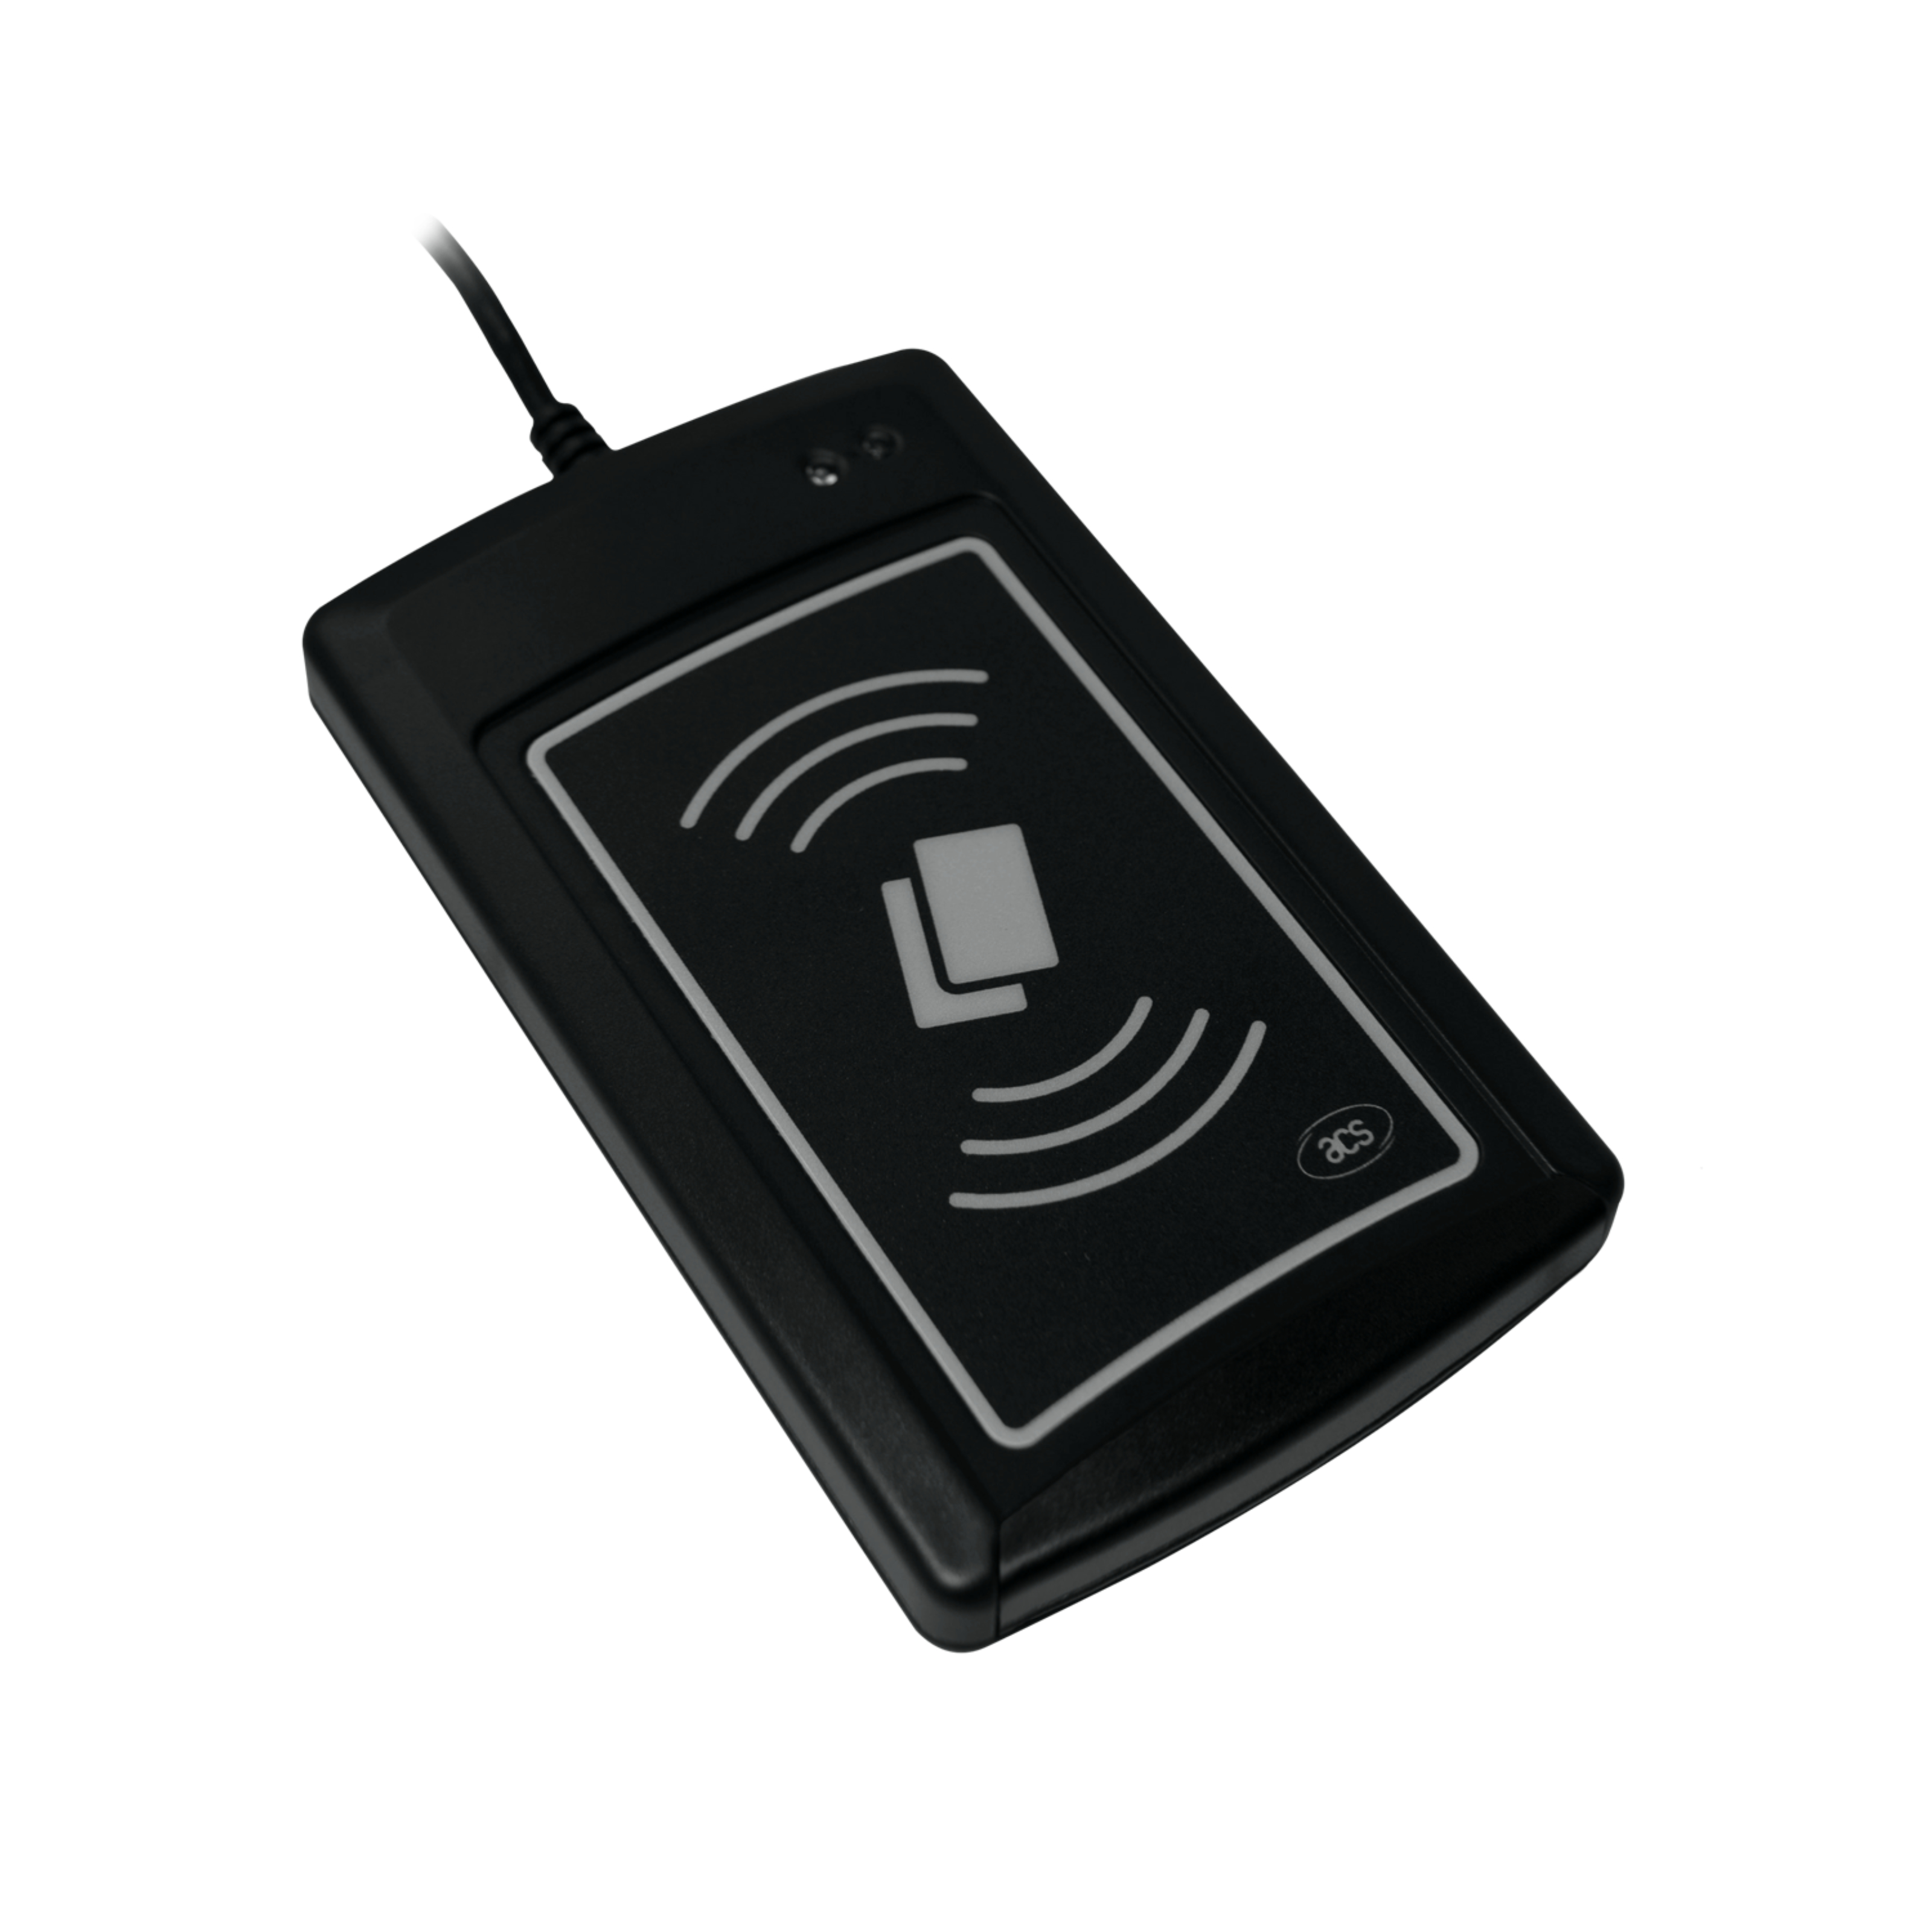 Vorderseite NFC UID Reader in schwarz 